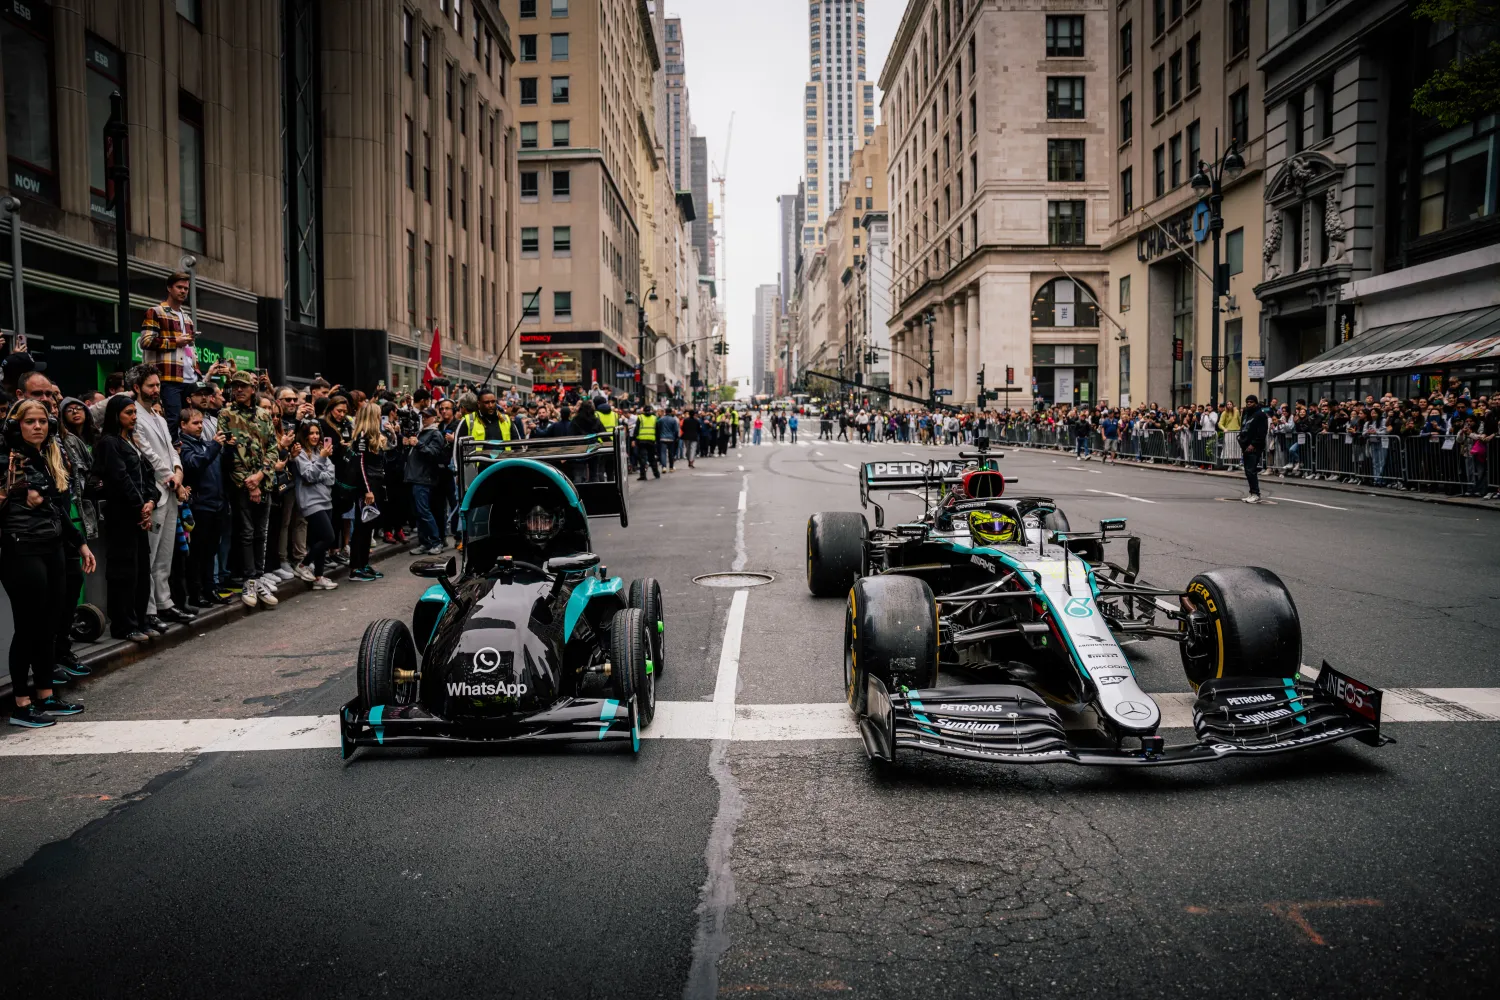 Om de komst van de nieuwe F1-emoji in WhatsApp te vieren, rijden deze 2 coureurs in een F1-auto door de straten van New York.